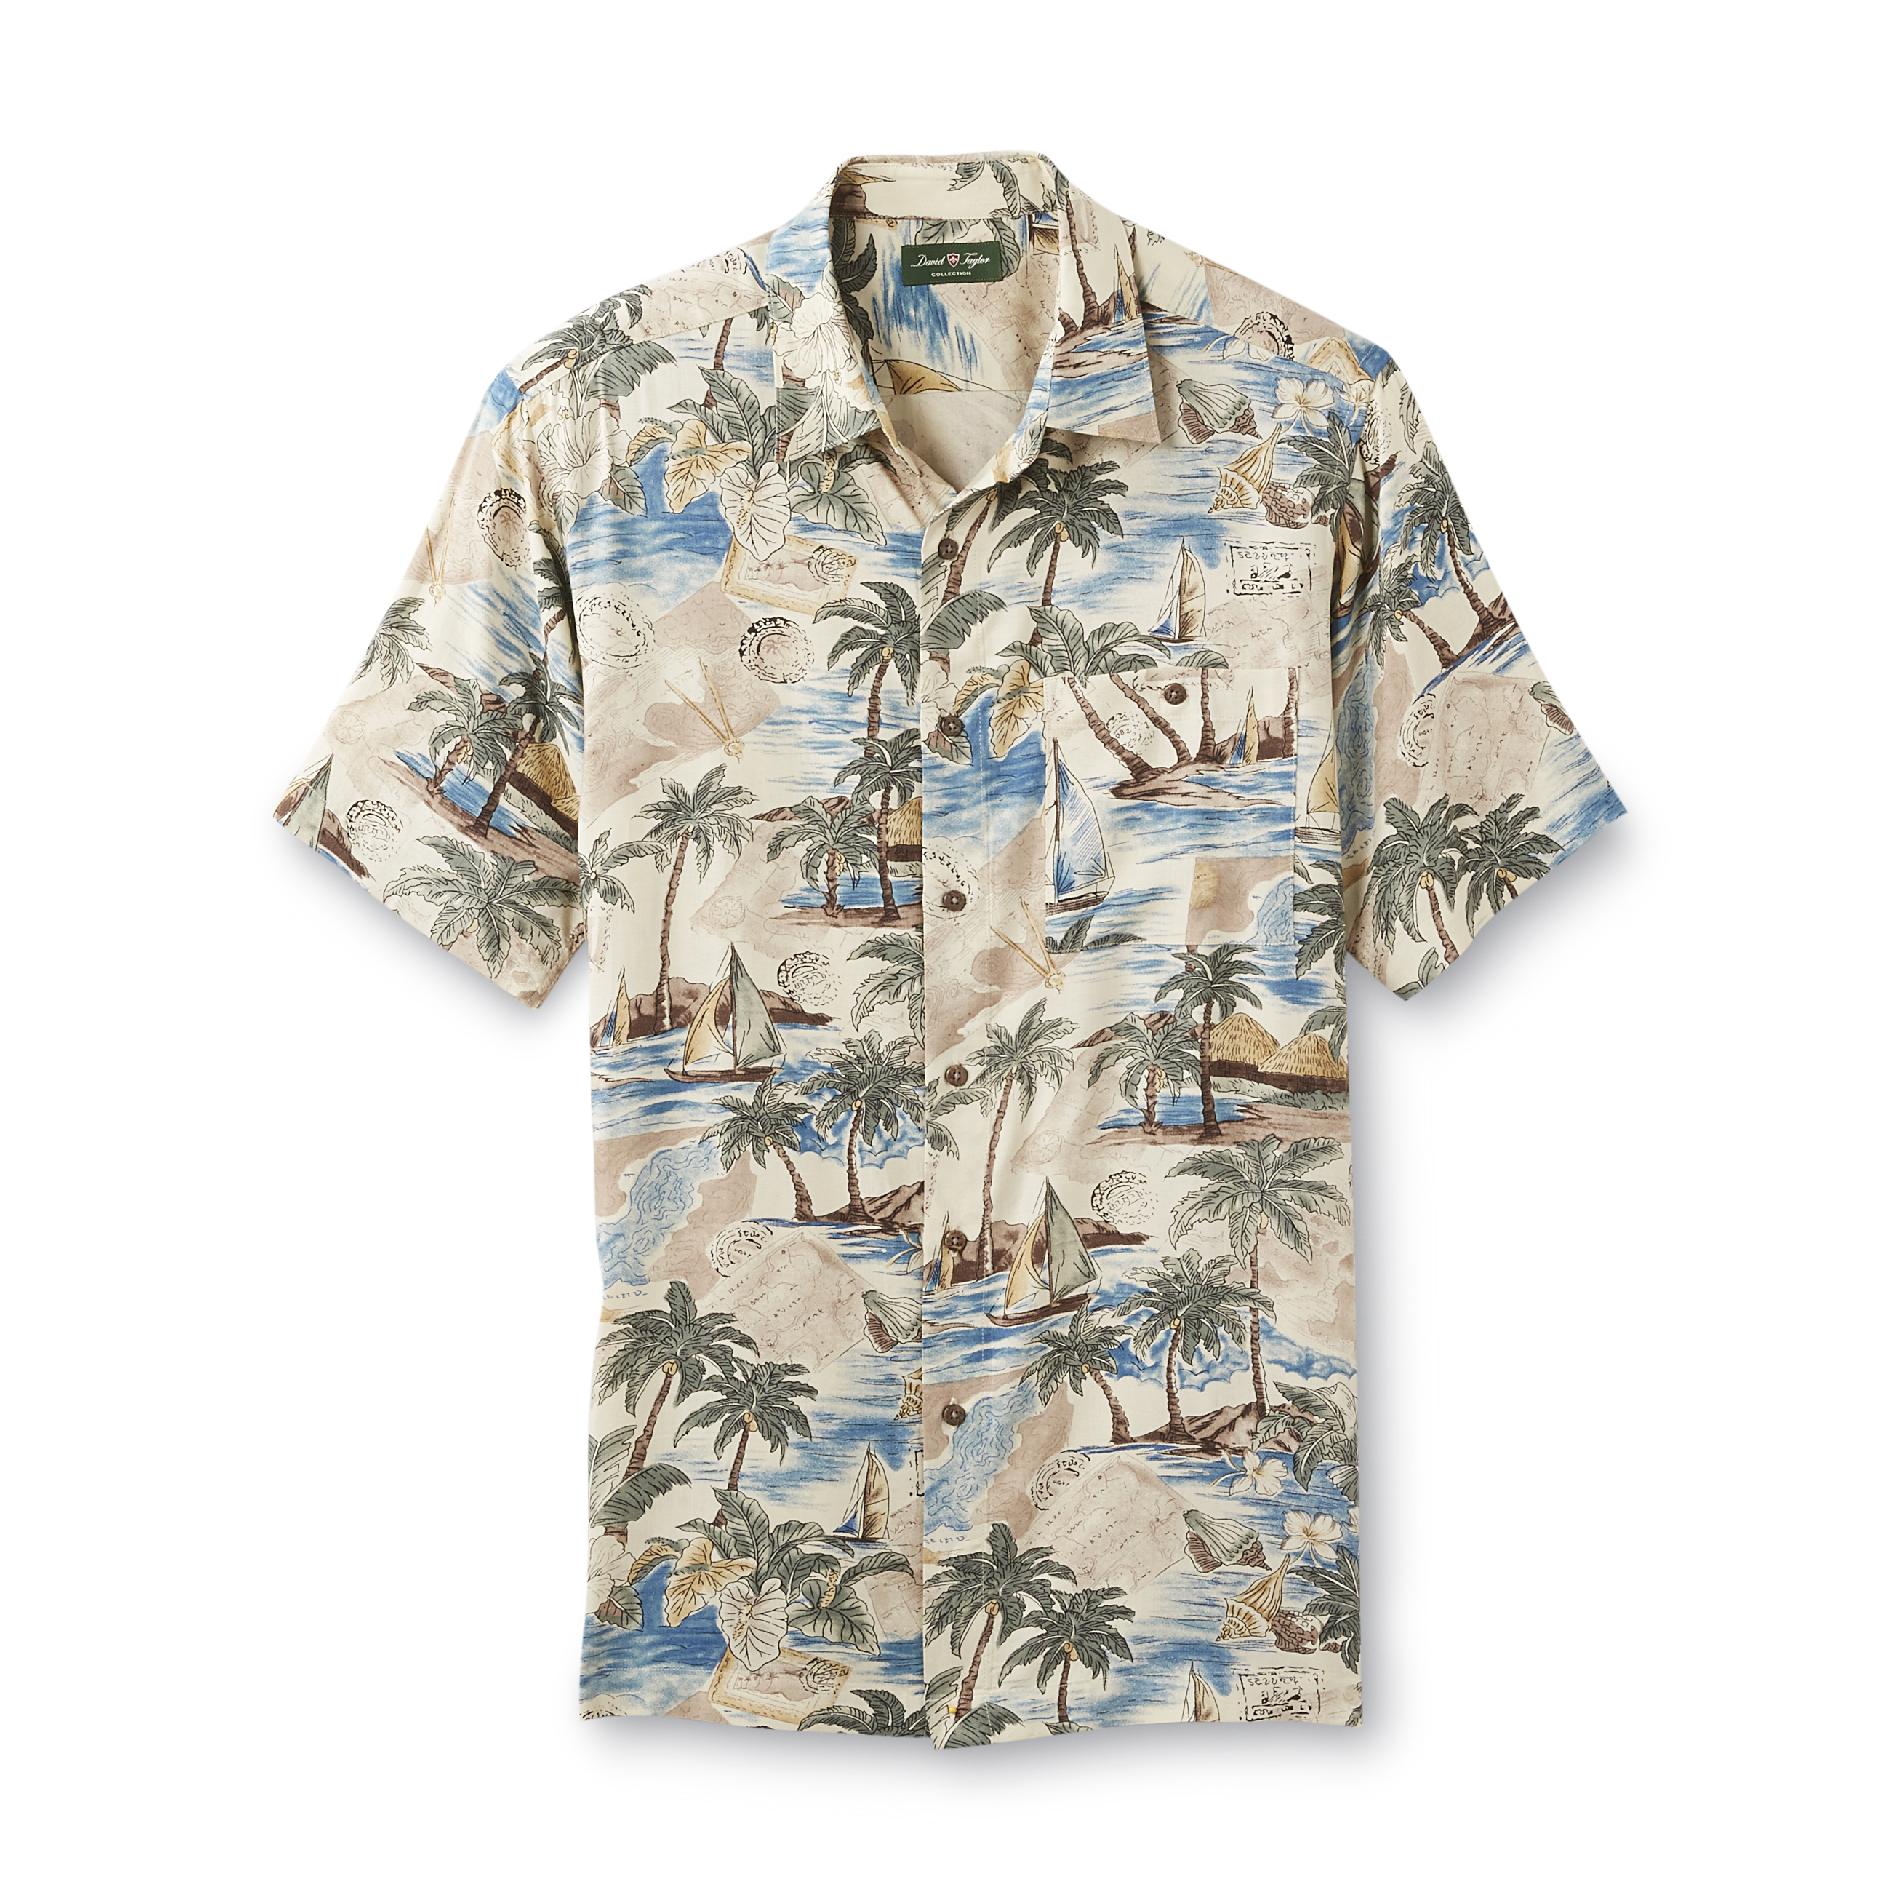 David Taylor Collection Men's Cabana Shirt - Sailboat